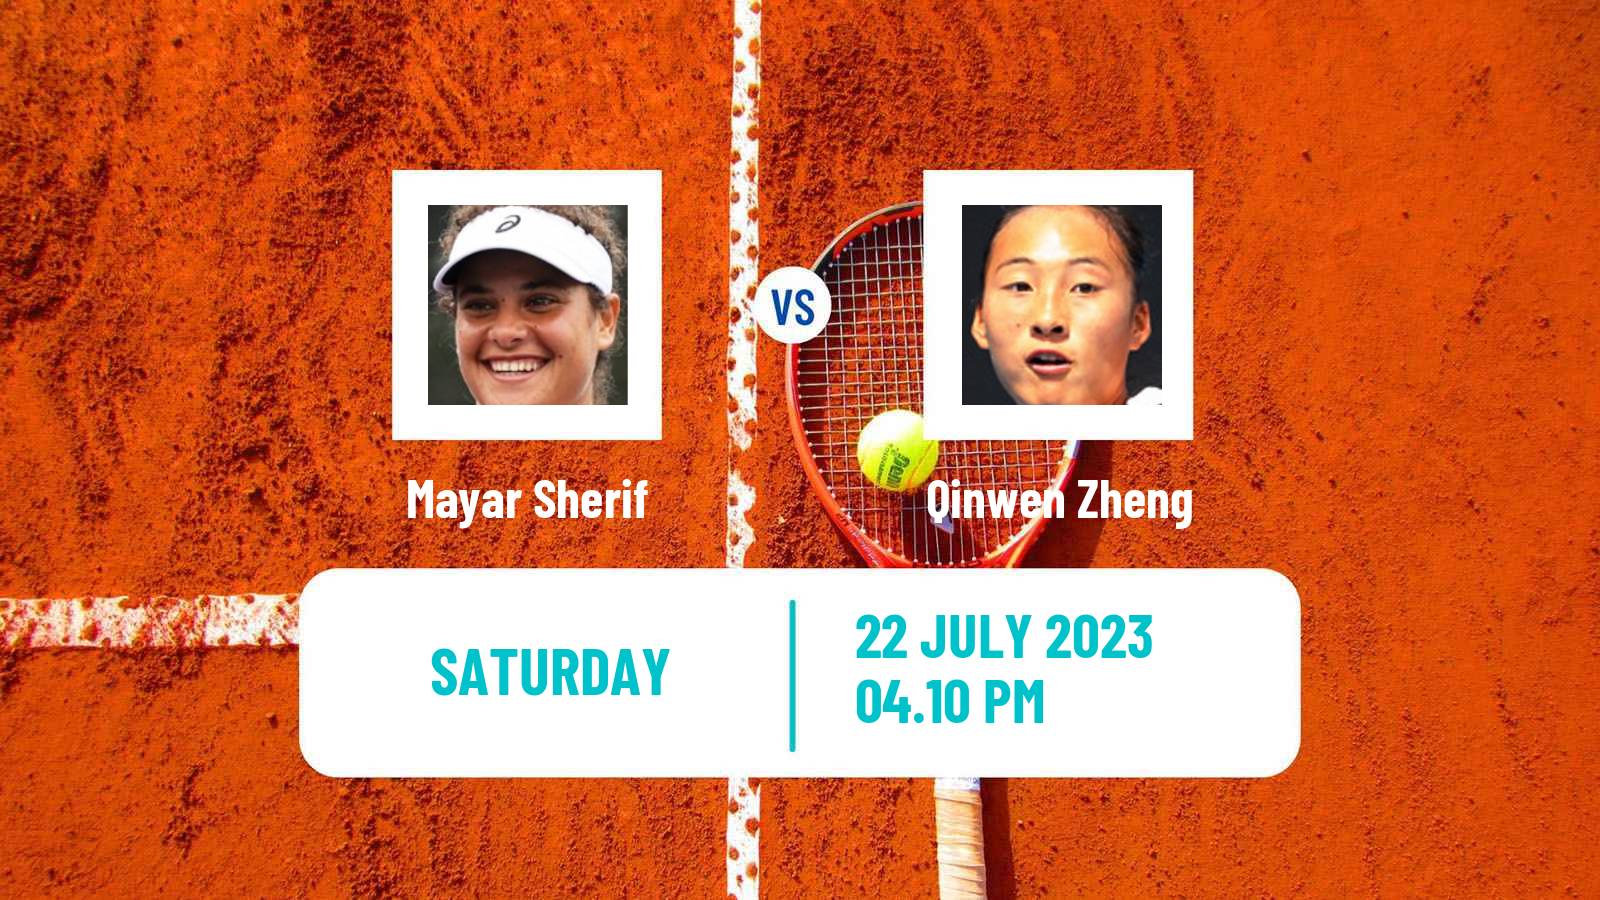 Tennis WTA Palermo Mayar Sherif - Qinwen Zheng